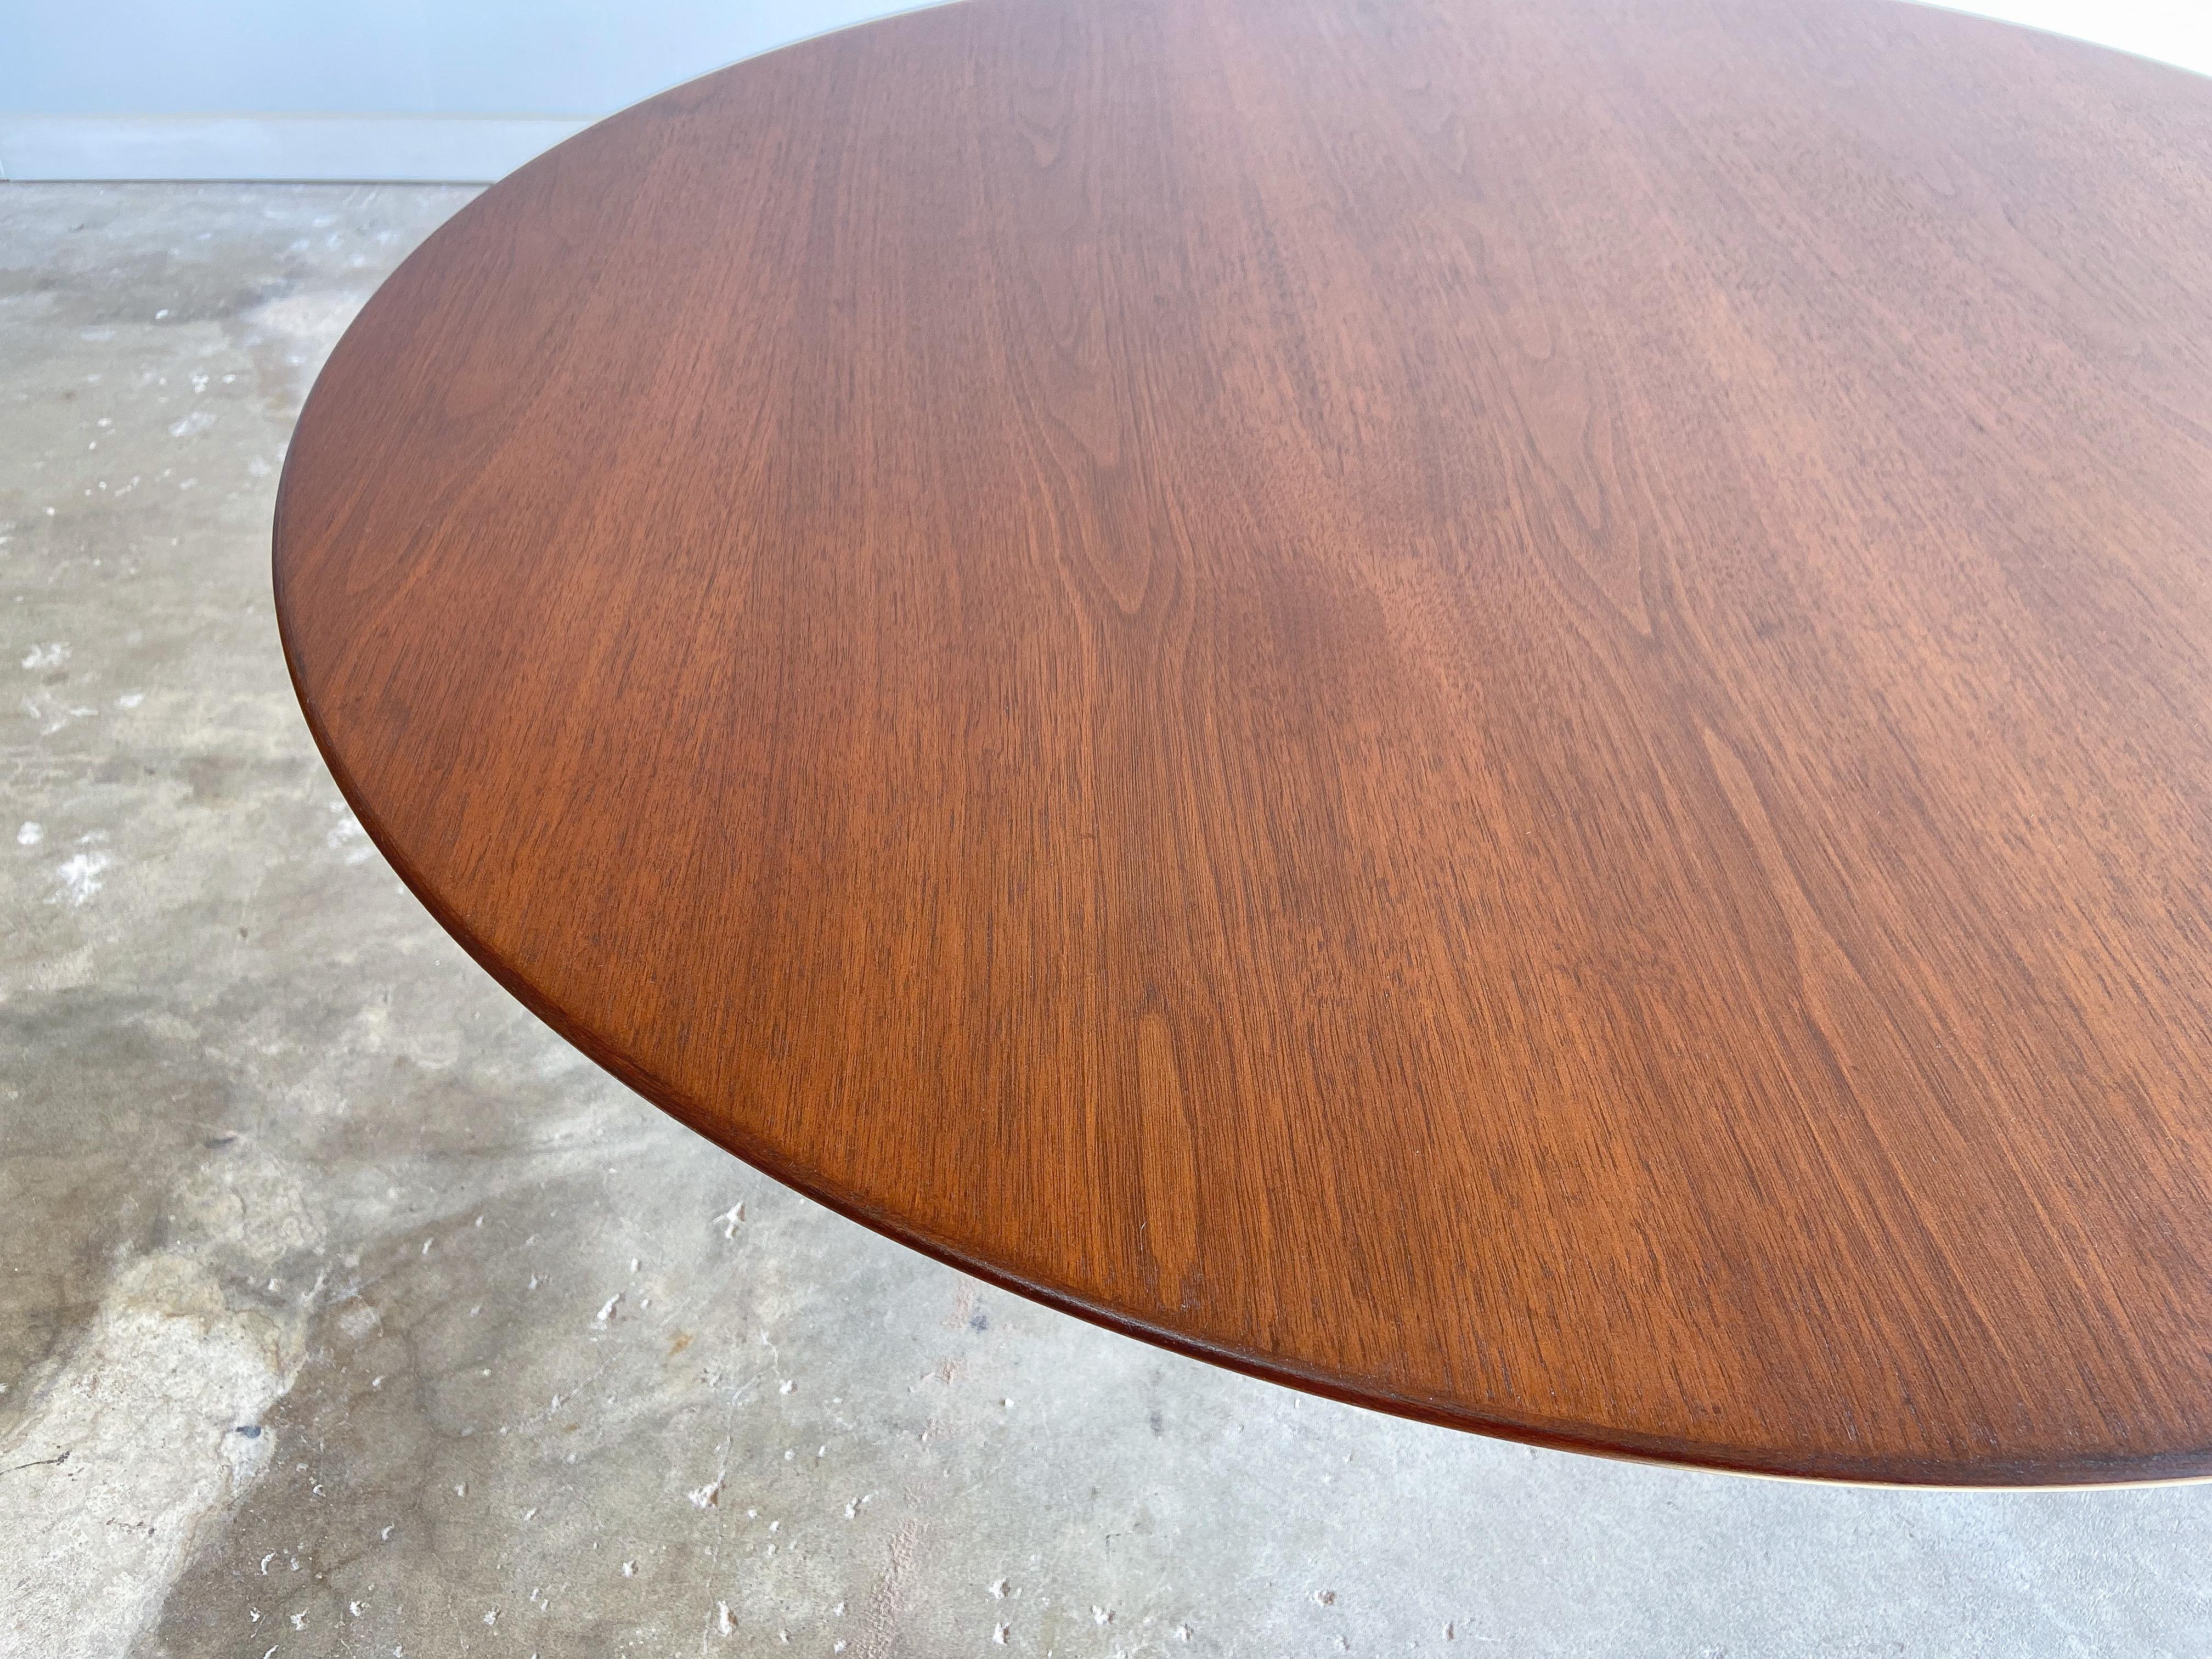 Eero Saarinen Coffee Table for Knoll, Walnut, 1970s For Sale 1